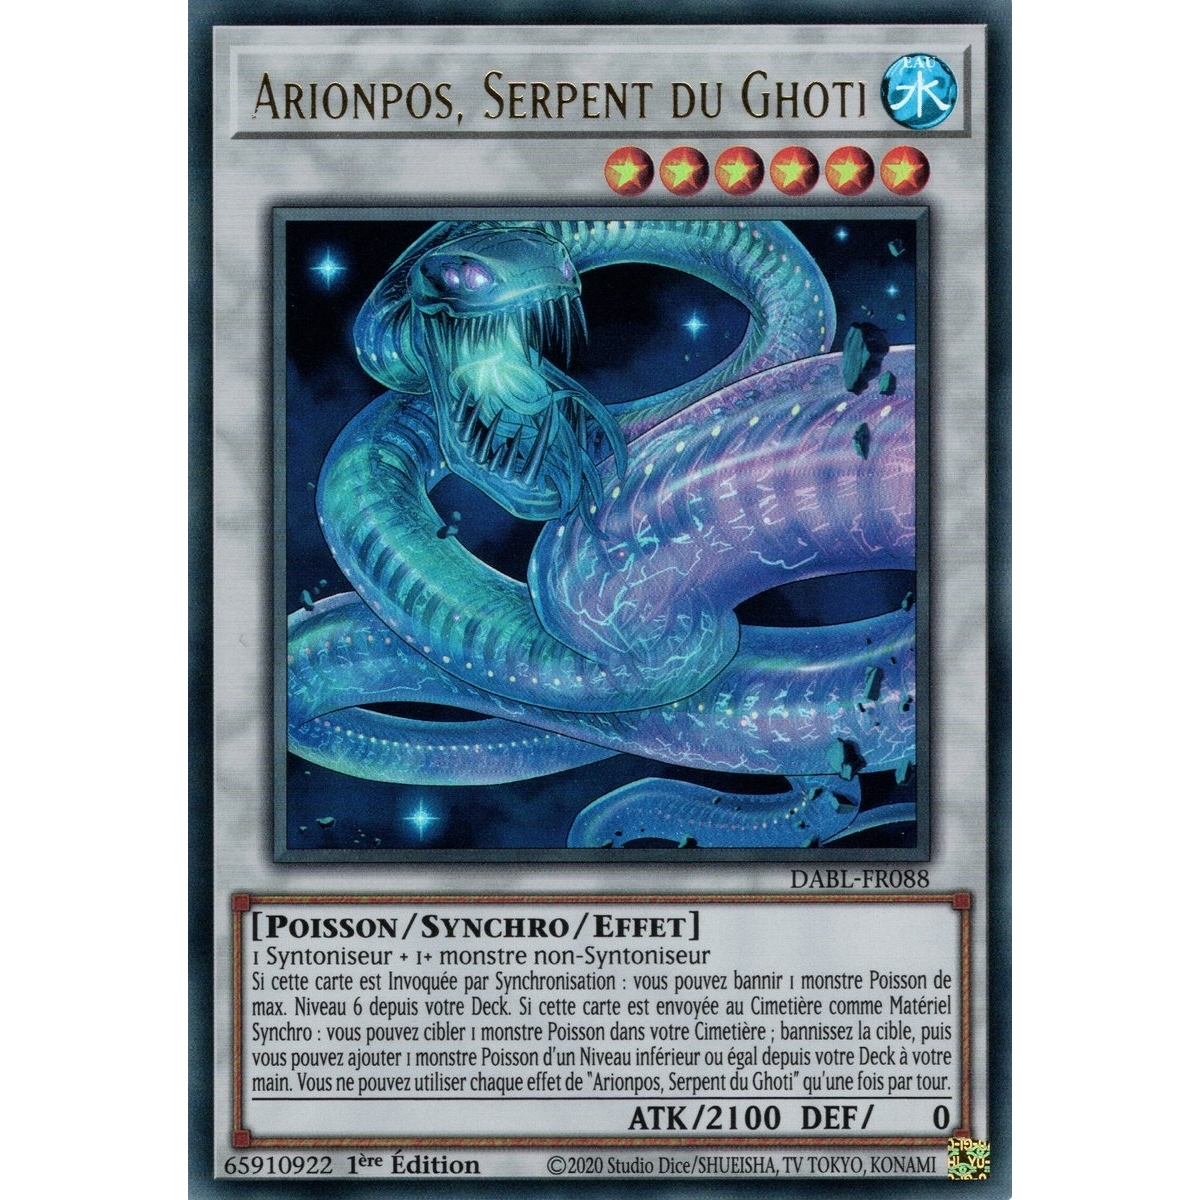 Arionpos Serpent du Ghoti DABL-FR088